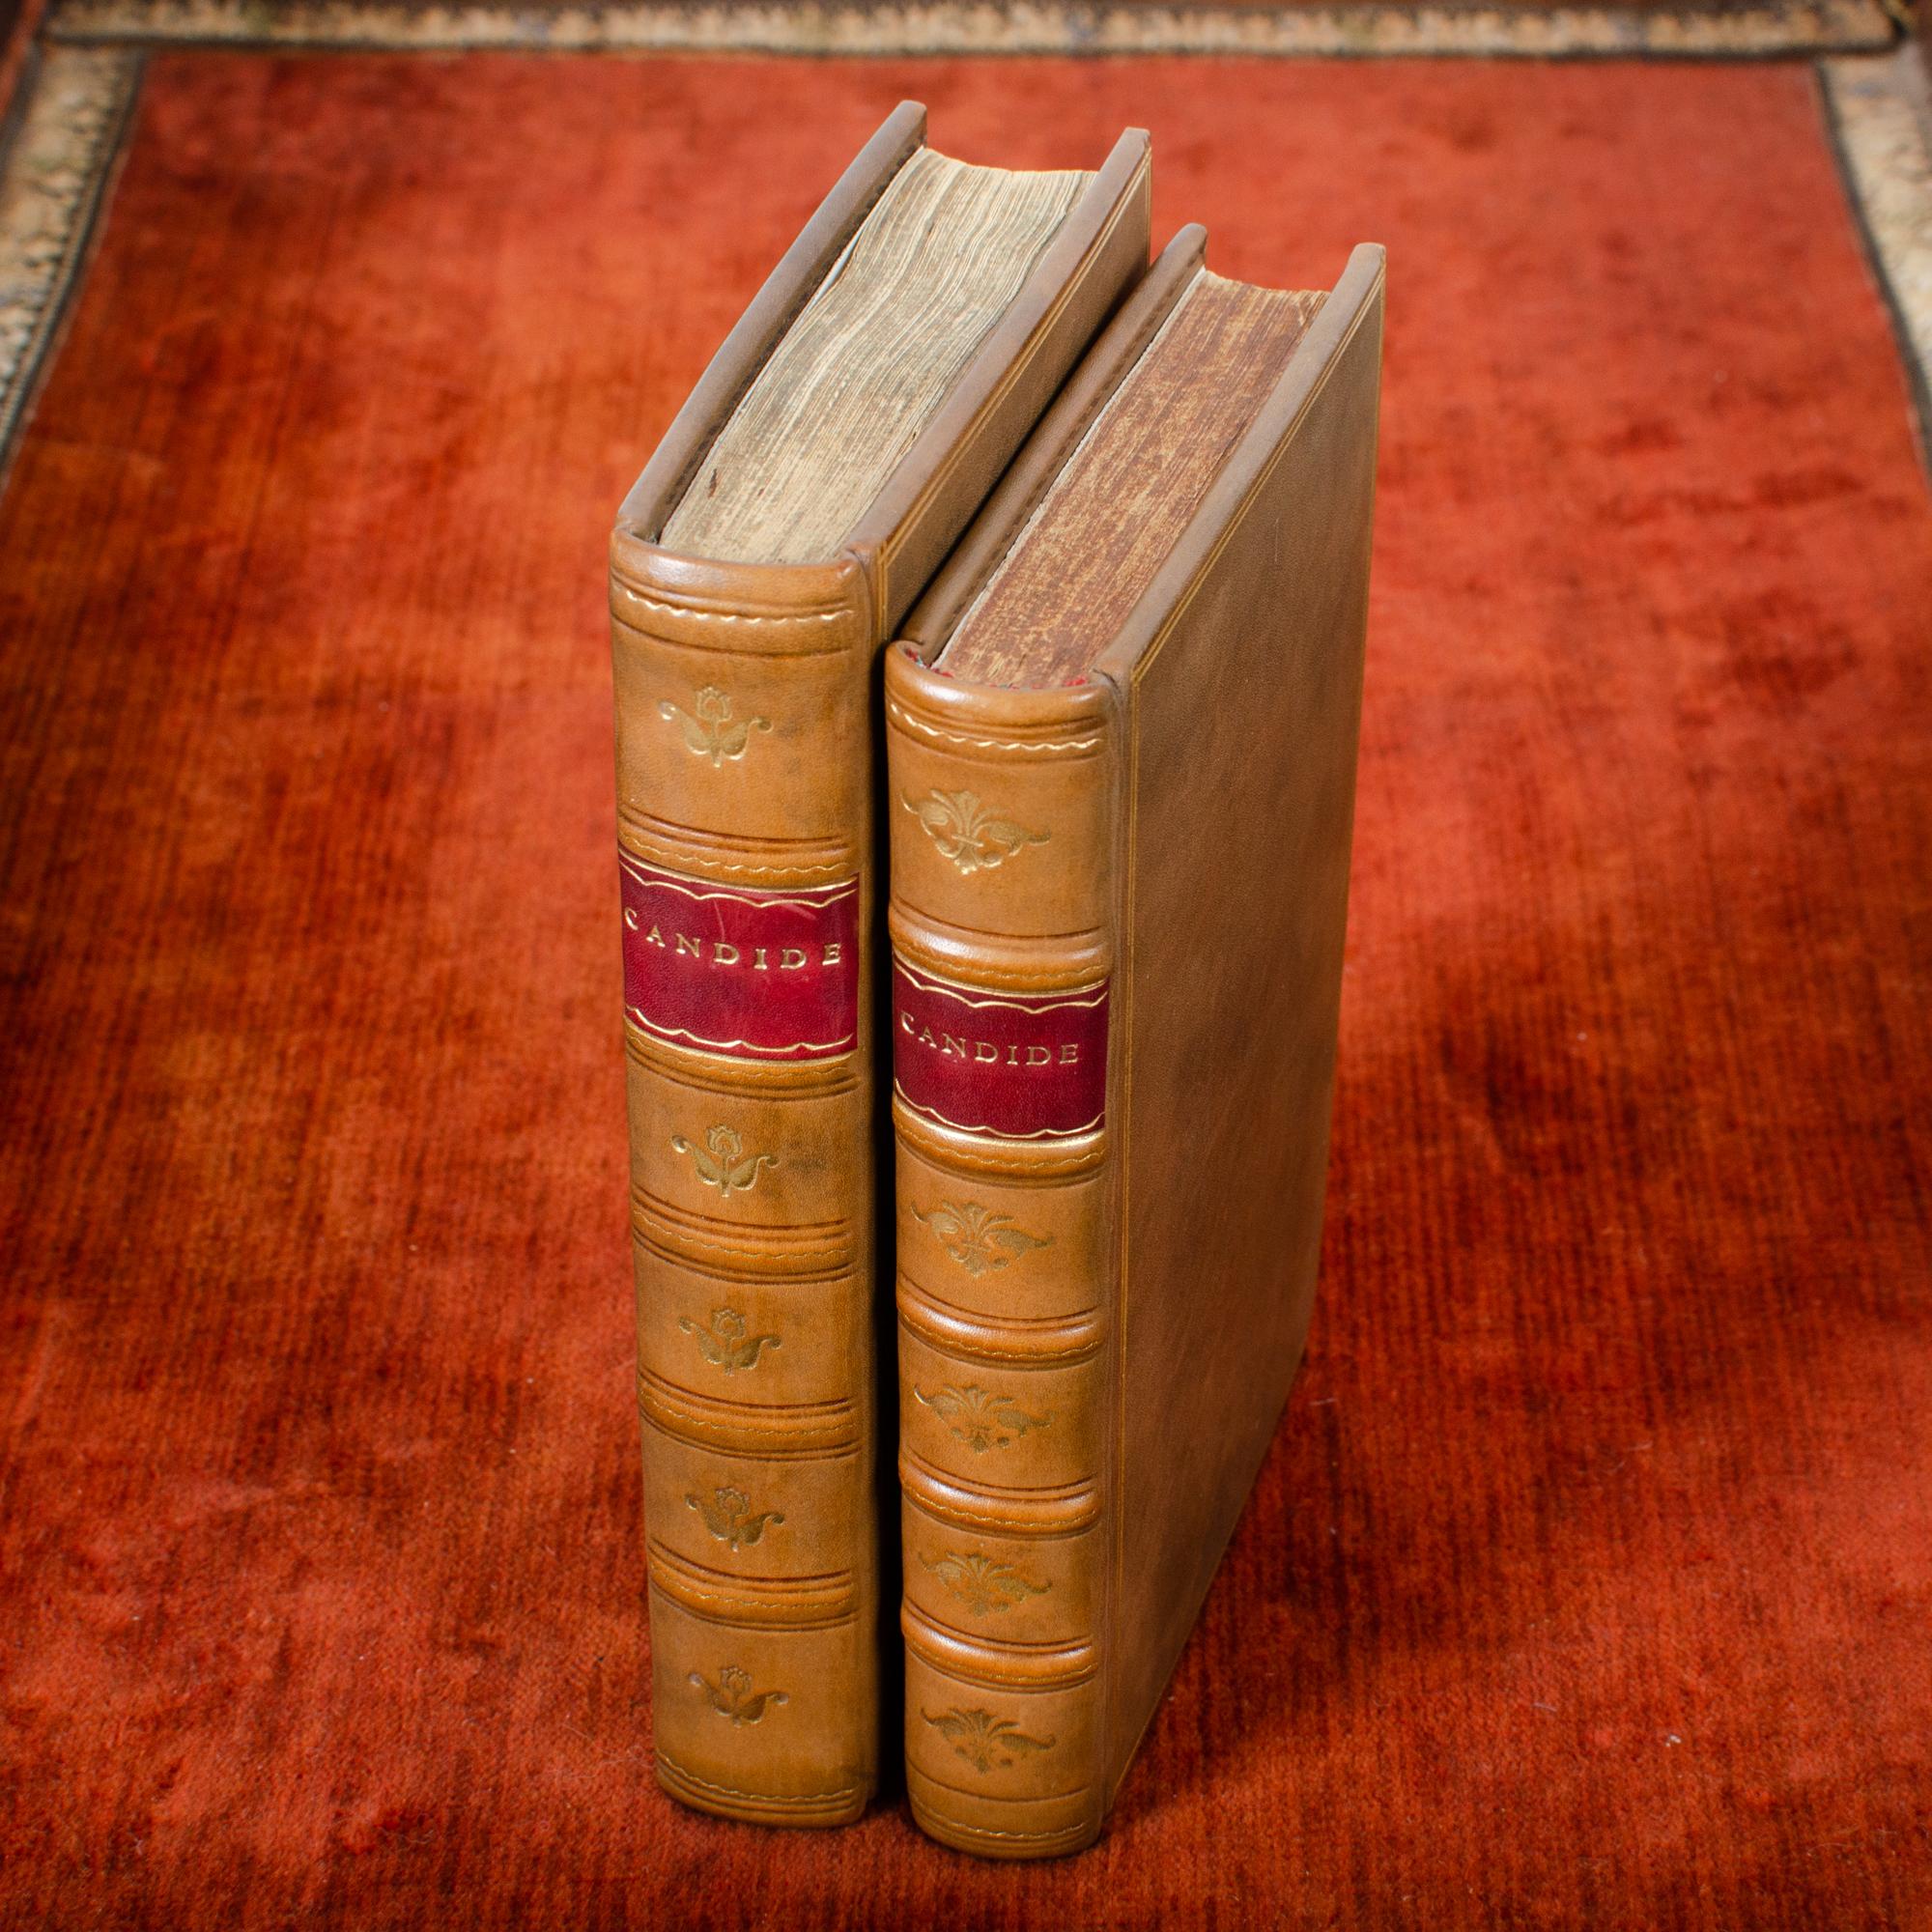 Ein seltenes Exemplar einer Erstausgabe von Candide, erschienen in Genf bei Cramer, 1759.

299 Seiten.  Die Holzschnitt-Ornamente und die von Voltaire korrigierten Seiten (S. 31/32, 41/42, 83/84, 85/86) entsprechen Barbers 299G (Morize 59a, Wade 1,